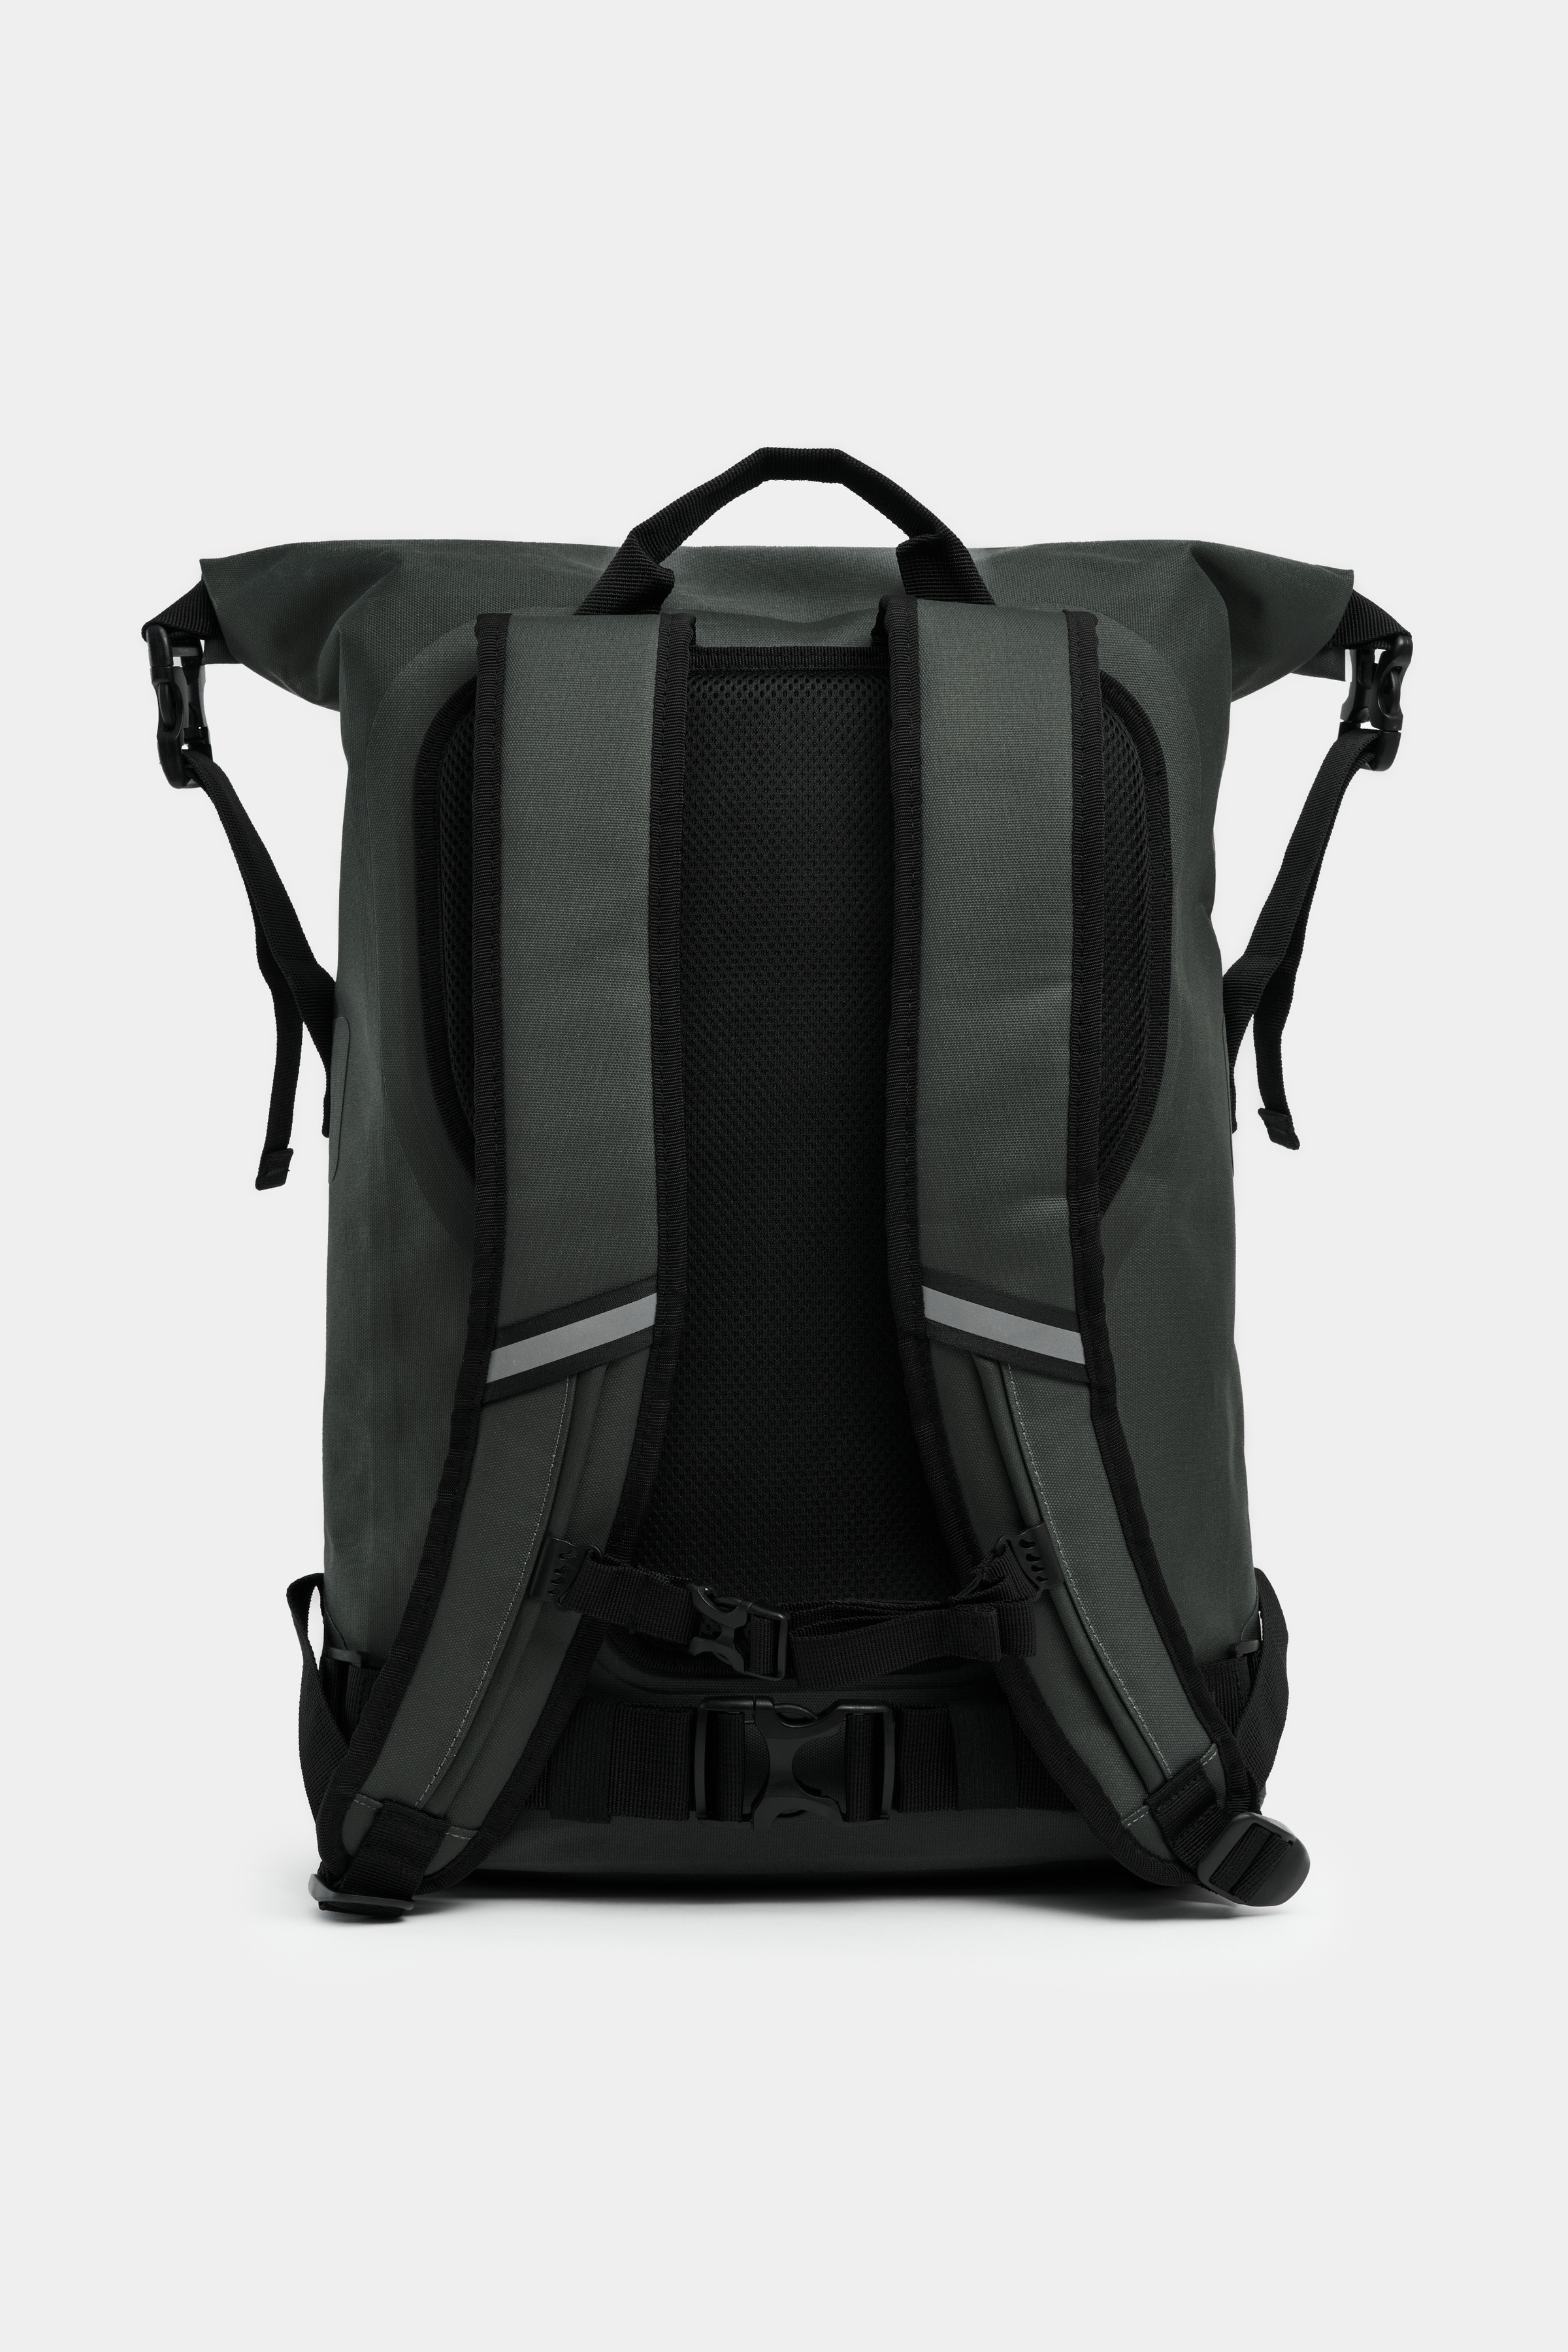 Rain Rolltop 25L Backpack Green - 3